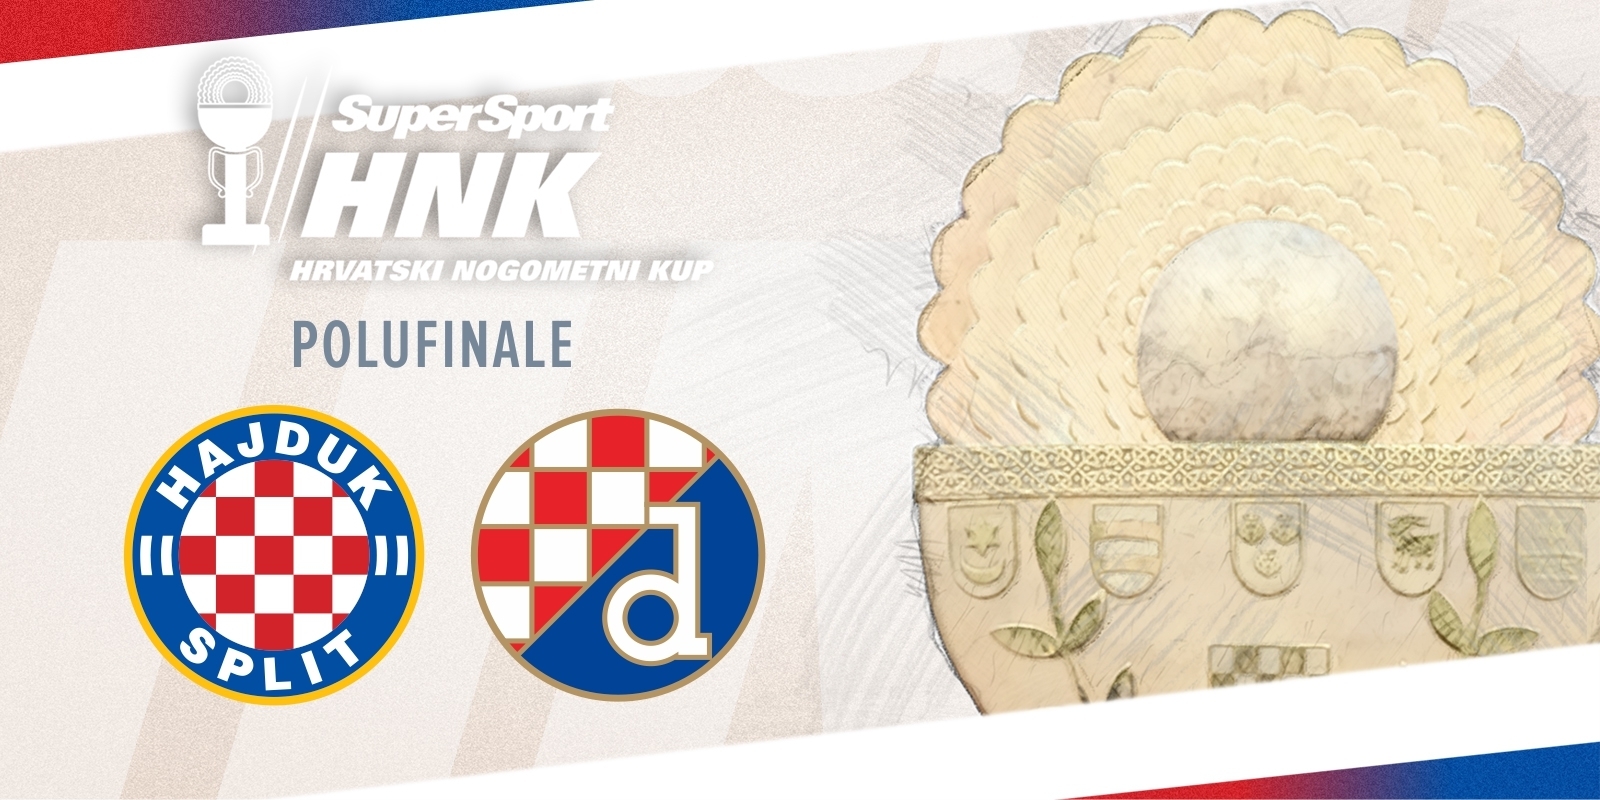 The Cup semifinal draw: Hajduk - Dinamo